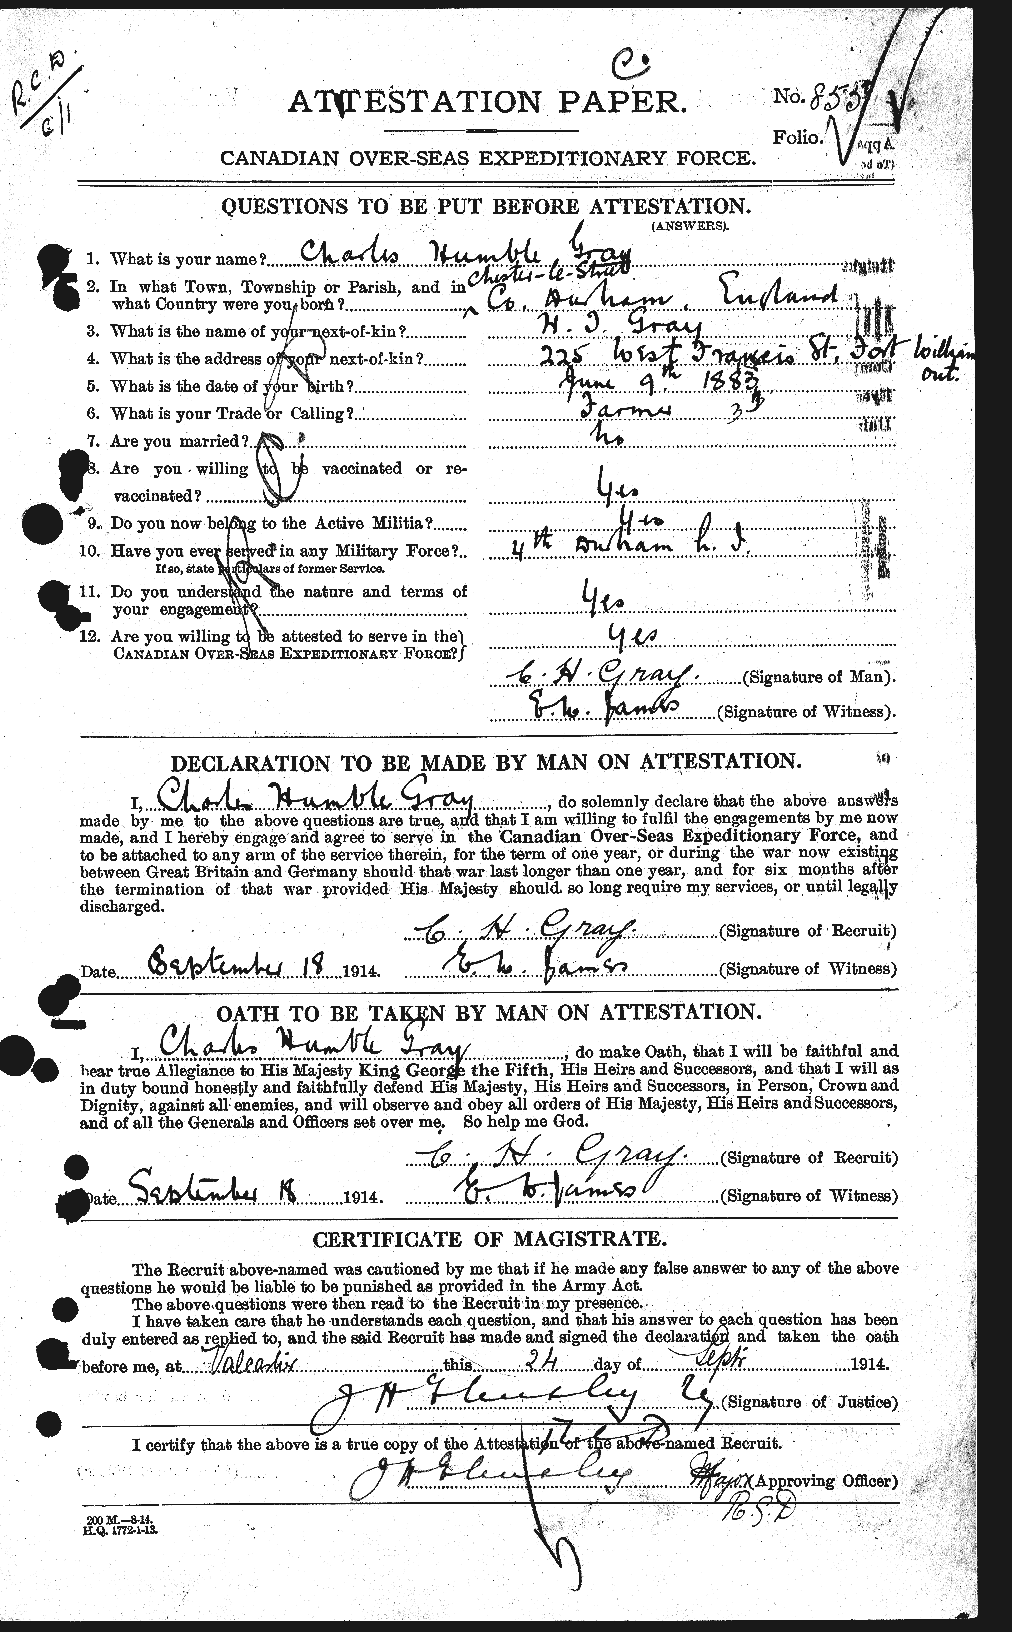 Dossiers du Personnel de la Première Guerre mondiale - CEC 361440a